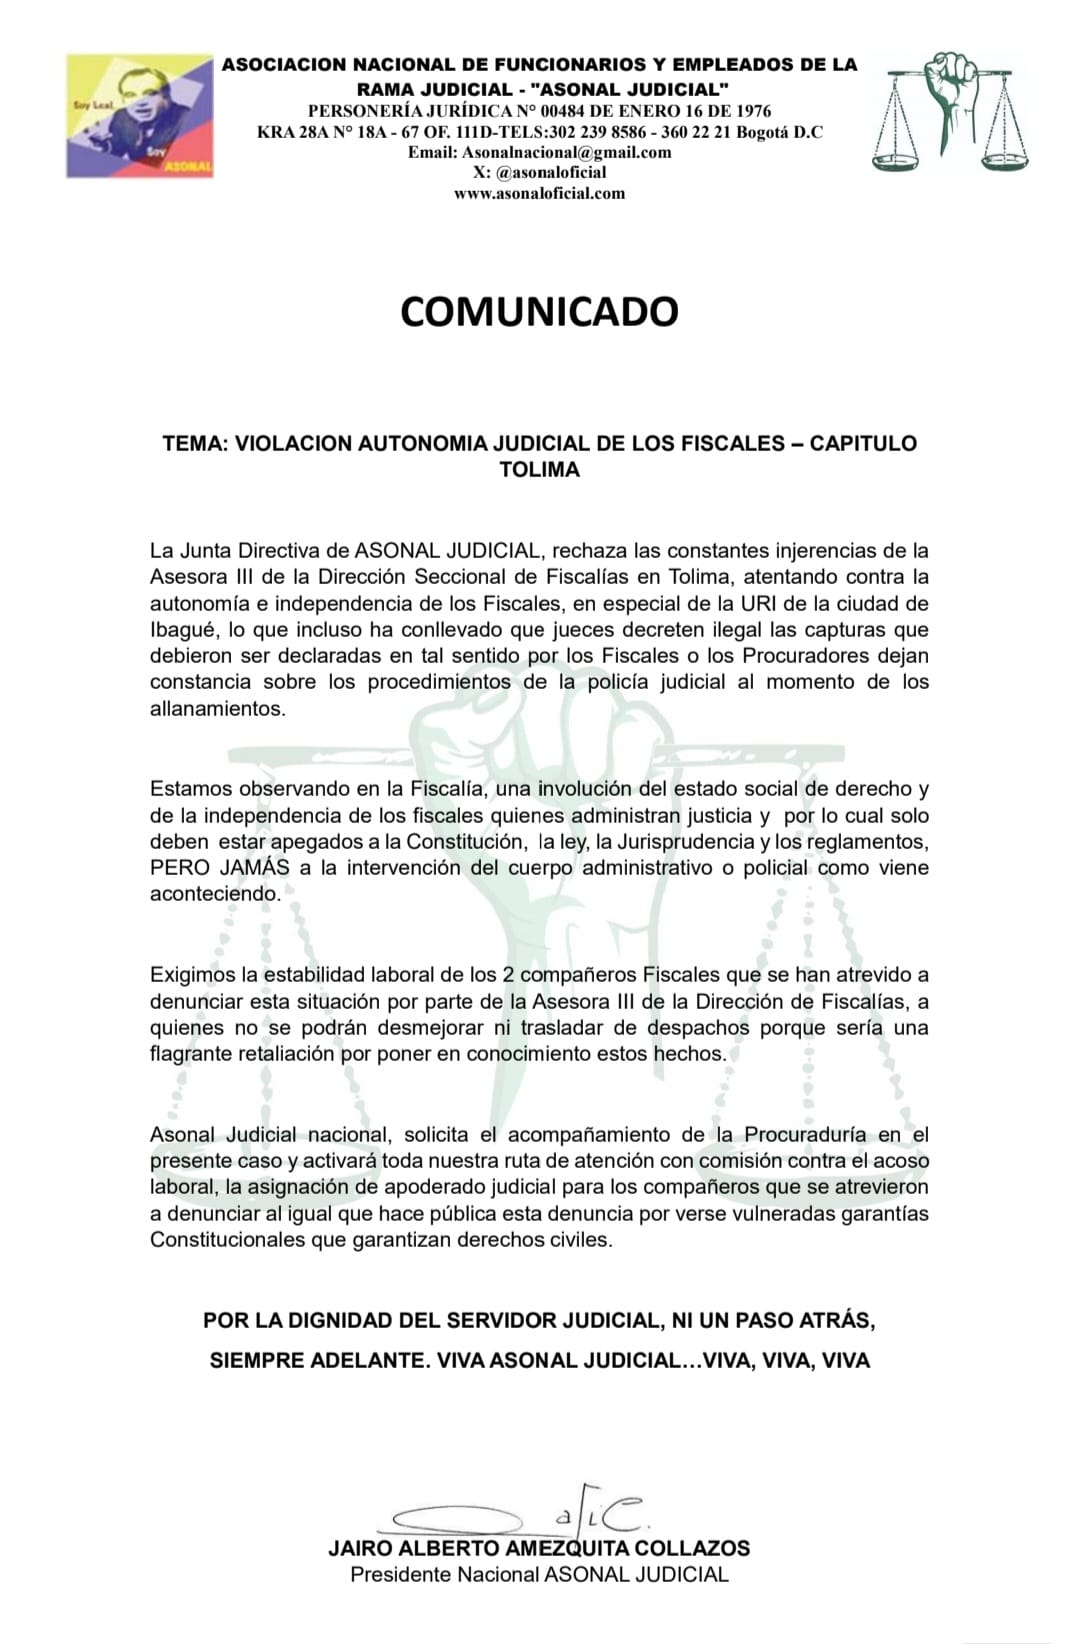 Asonal Judicial señala presiones y pide independencia y autonomía judicial de los Fiscales del Tolima 3